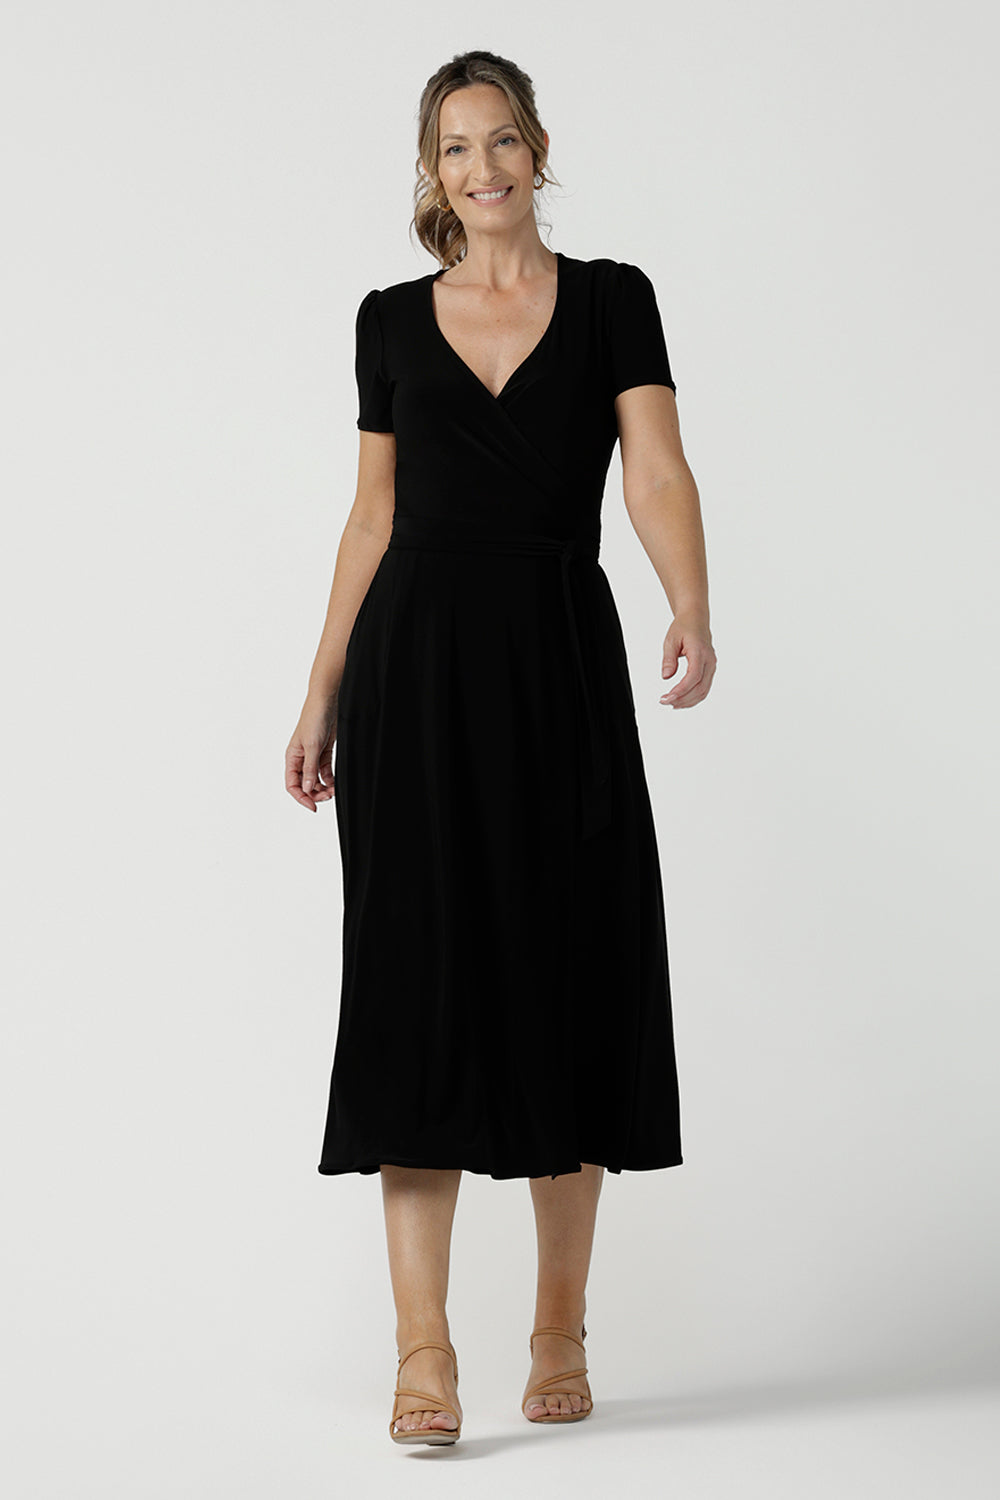 Size inclusive jersey wrap dress in size 8. Curvy women workwear midi dress with pockets. Black dress. 